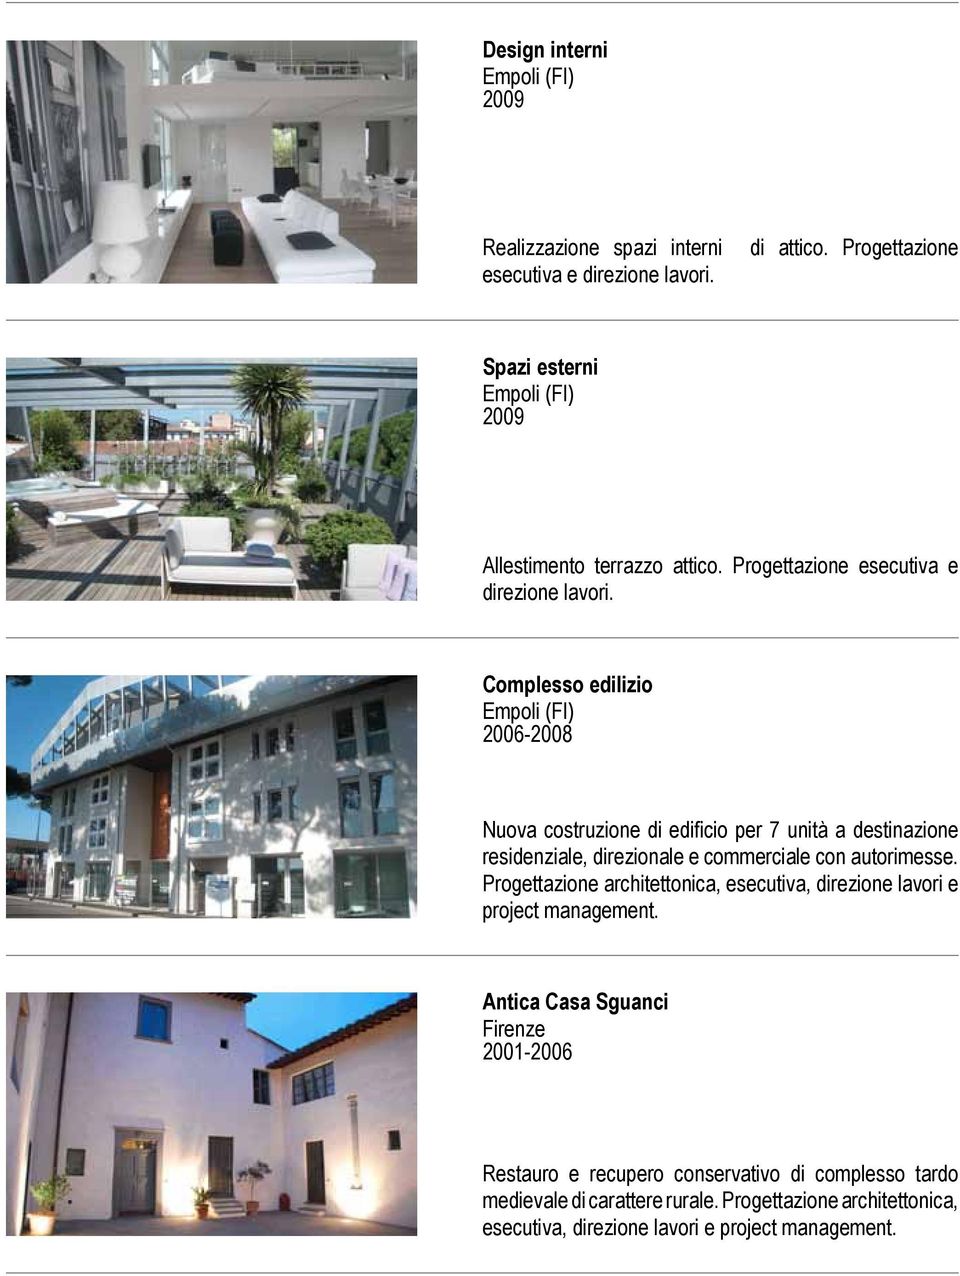 Complesso edilizio Empoli (FI) 2006-2008 Nuova costruzione di edificio per 7 unità a destinazione residenziale, direzionale e commerciale con autorimesse.